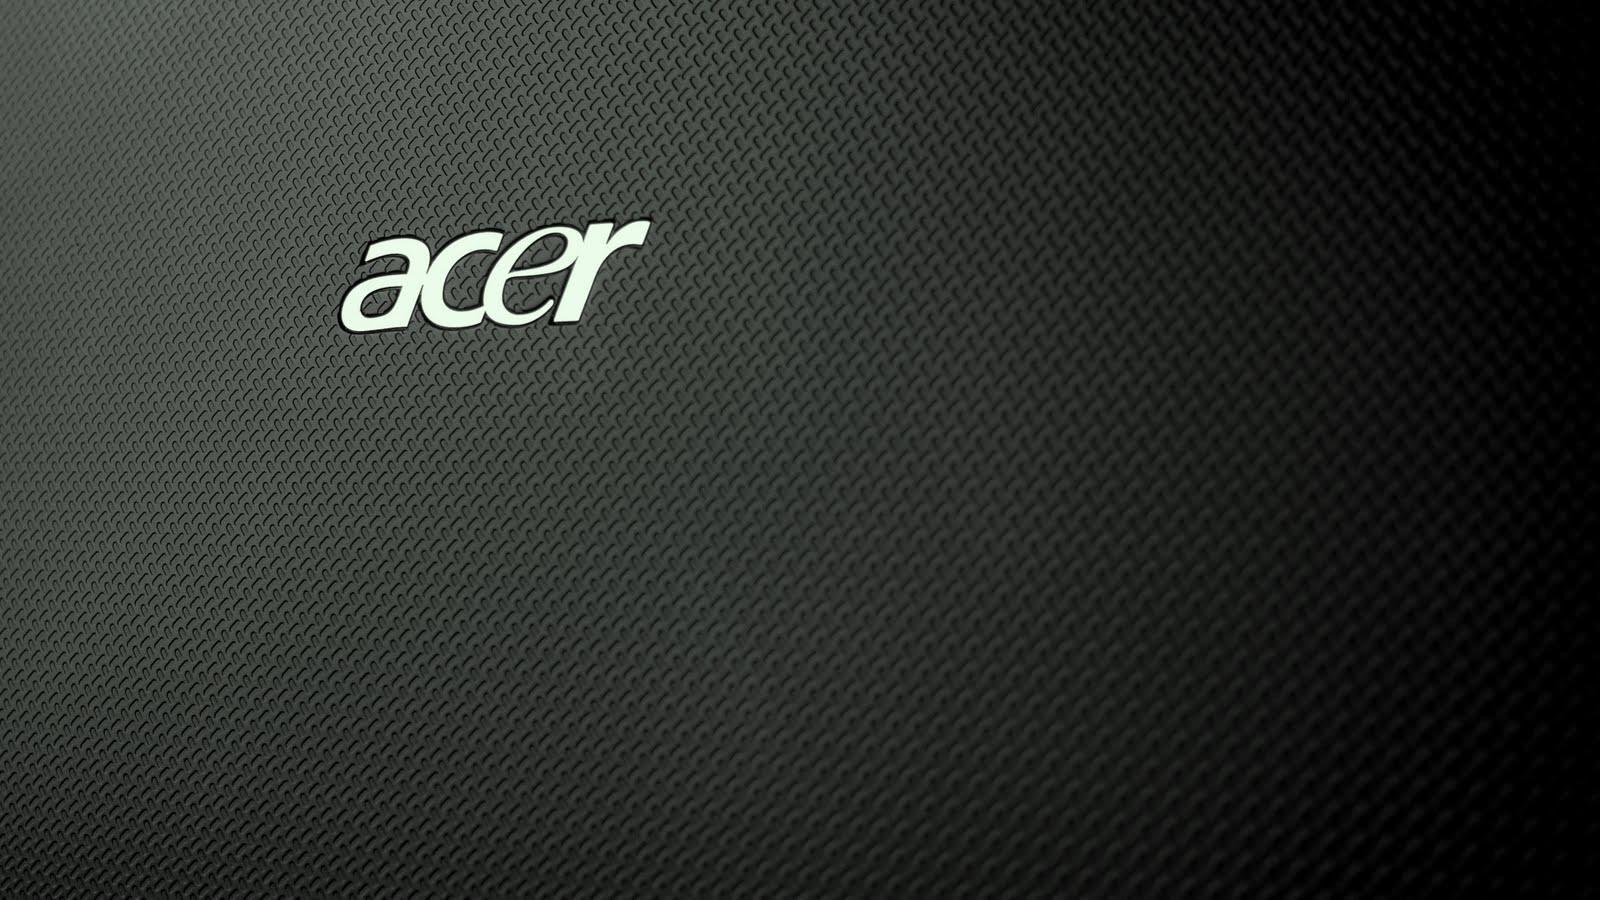 Acer Timeline (id: 86959)